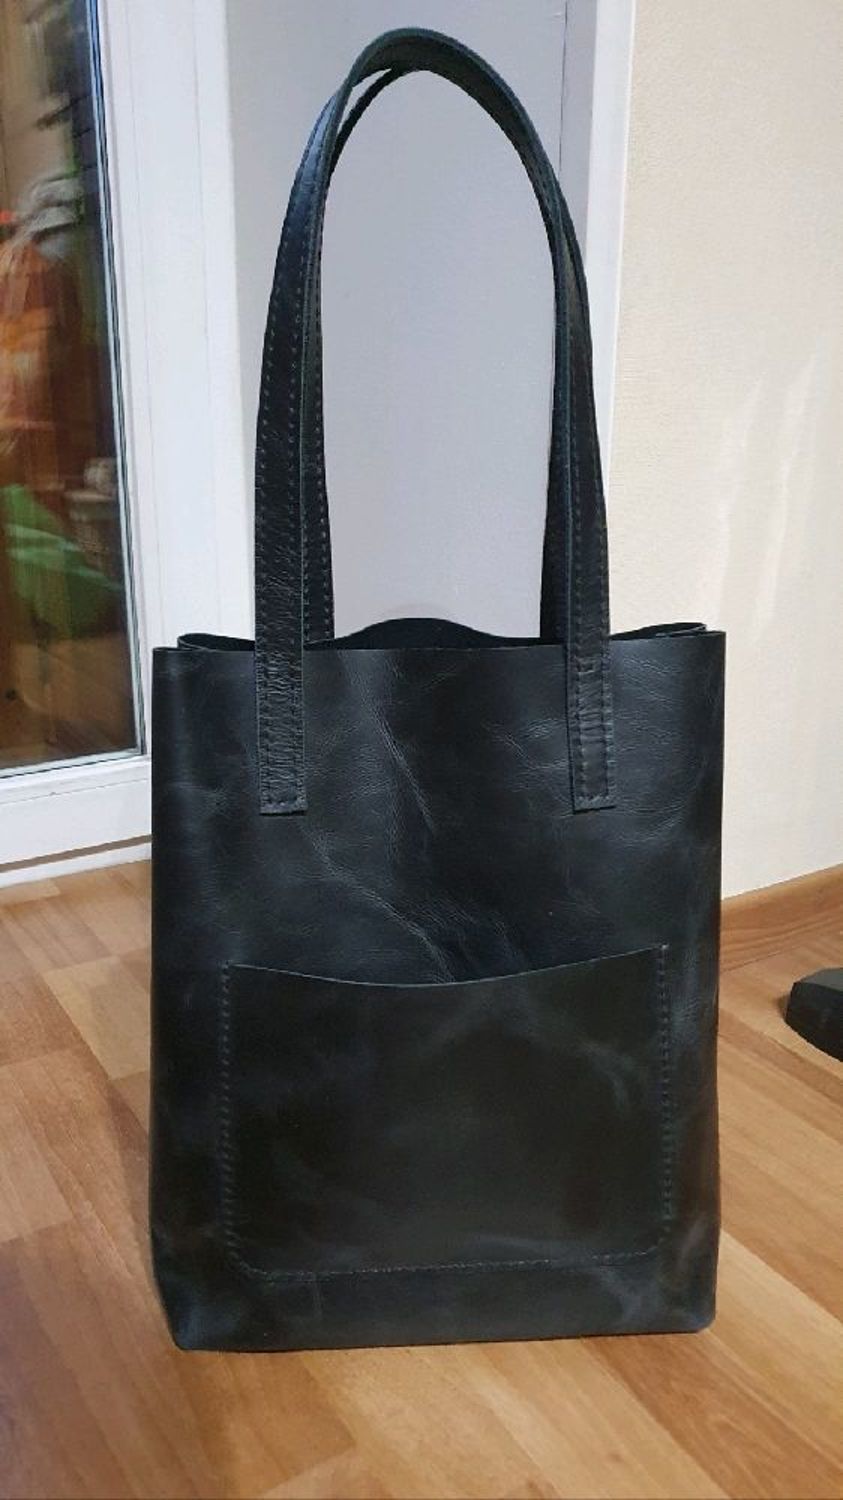 Photo №1 к отзыву покупателя mangomangomsc о товаре Сумка женская кожаная шоппер черный (черная кожаная сумка)